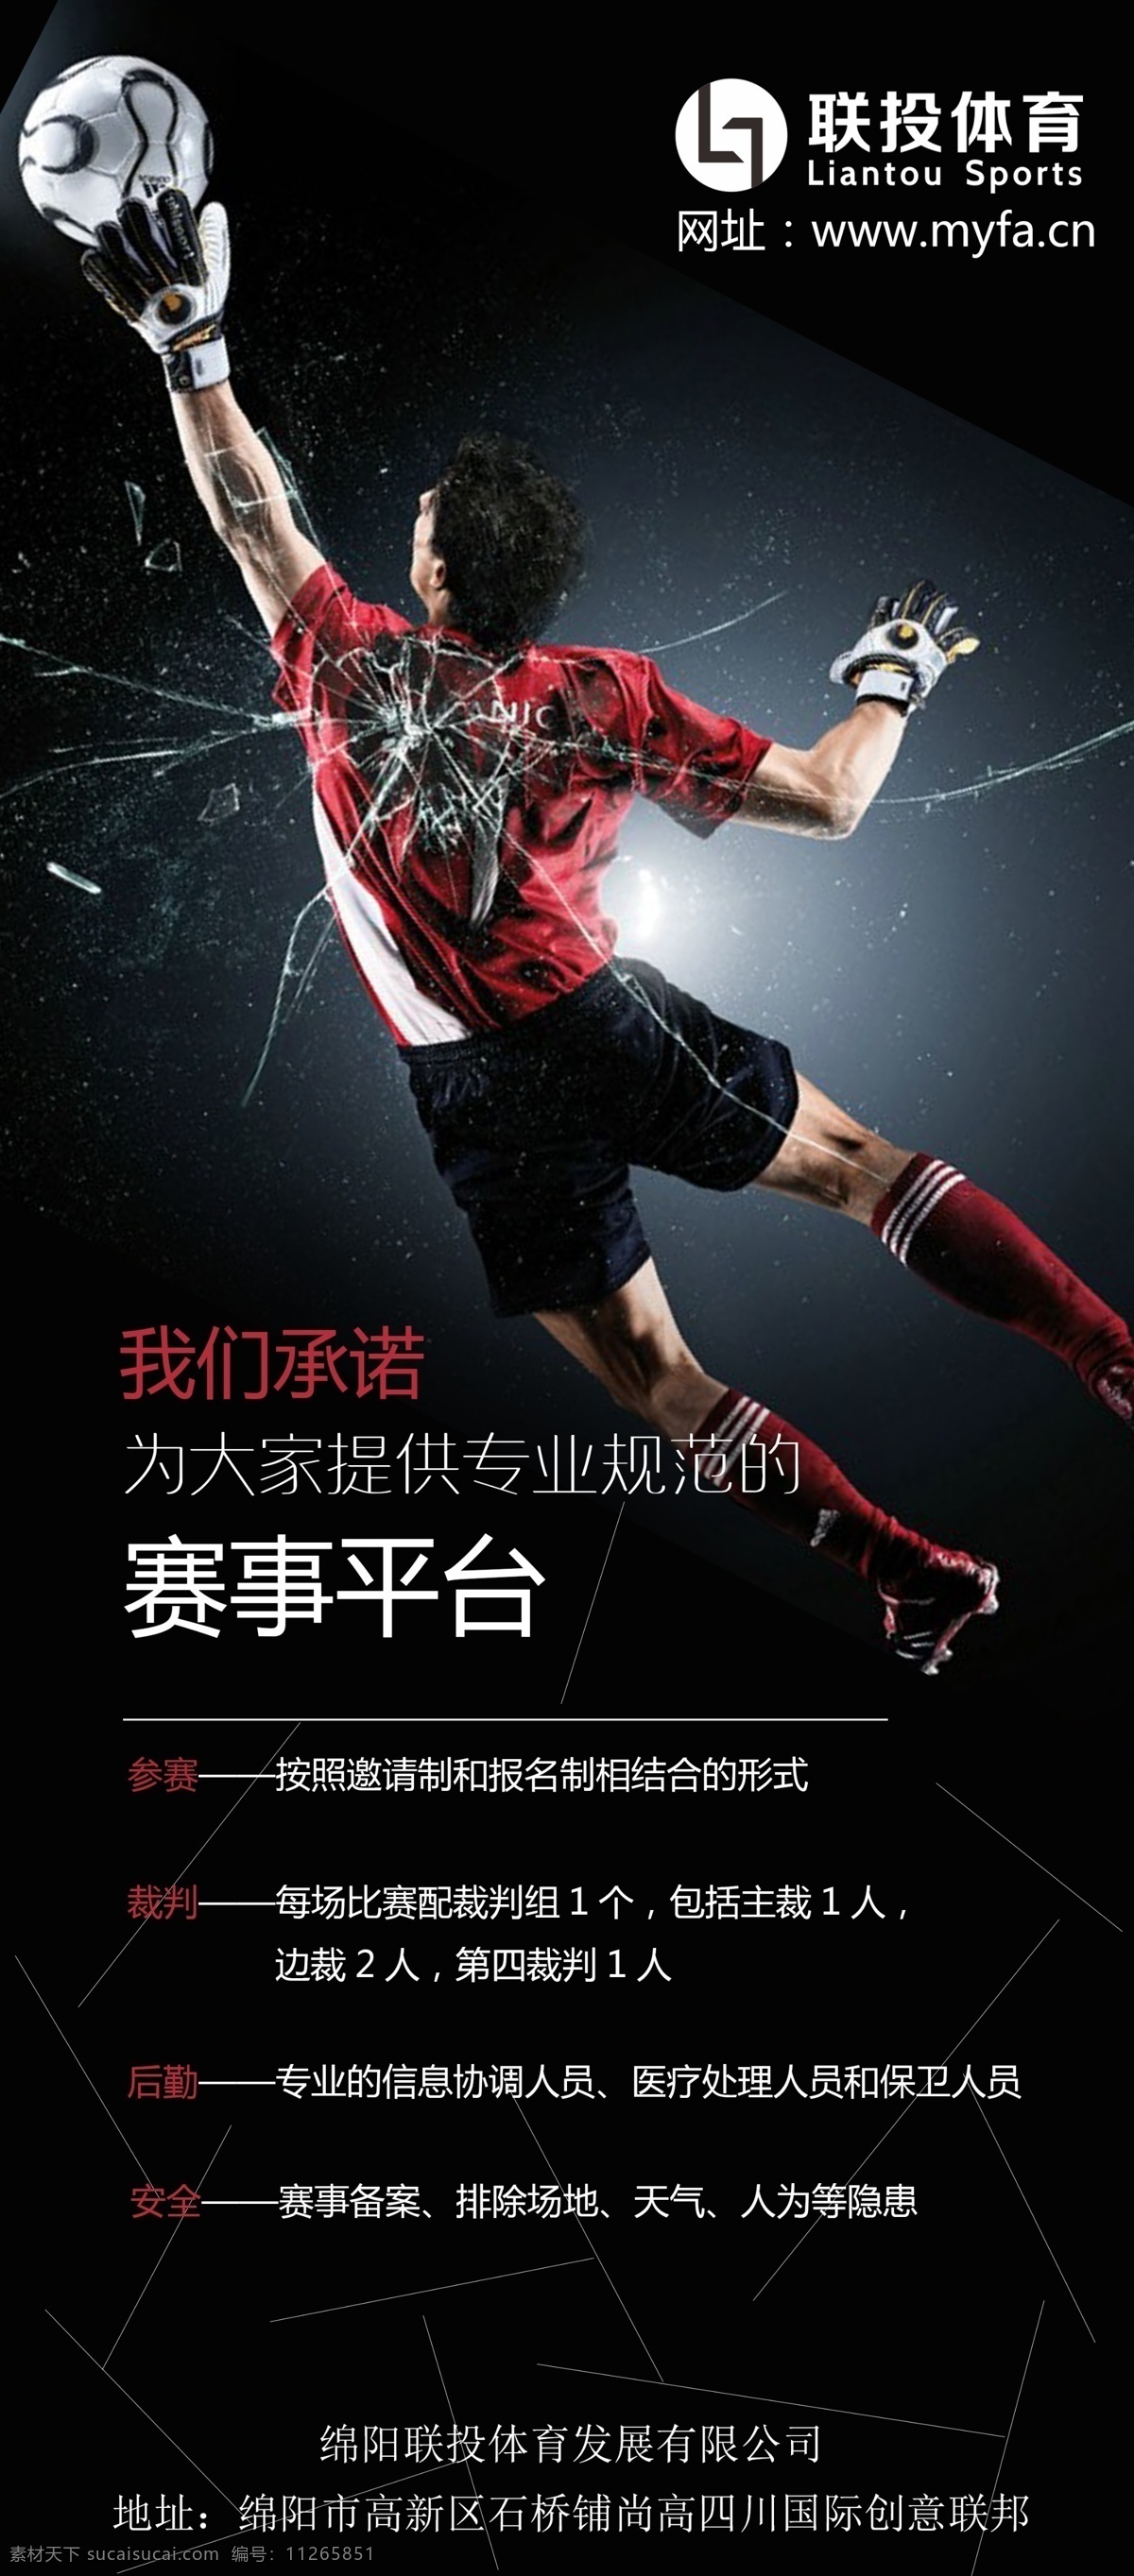 体育 运动 足球 展架 海报 平面设计 平面 淘宝素材 淘宝设计 淘宝模板下载 黑色